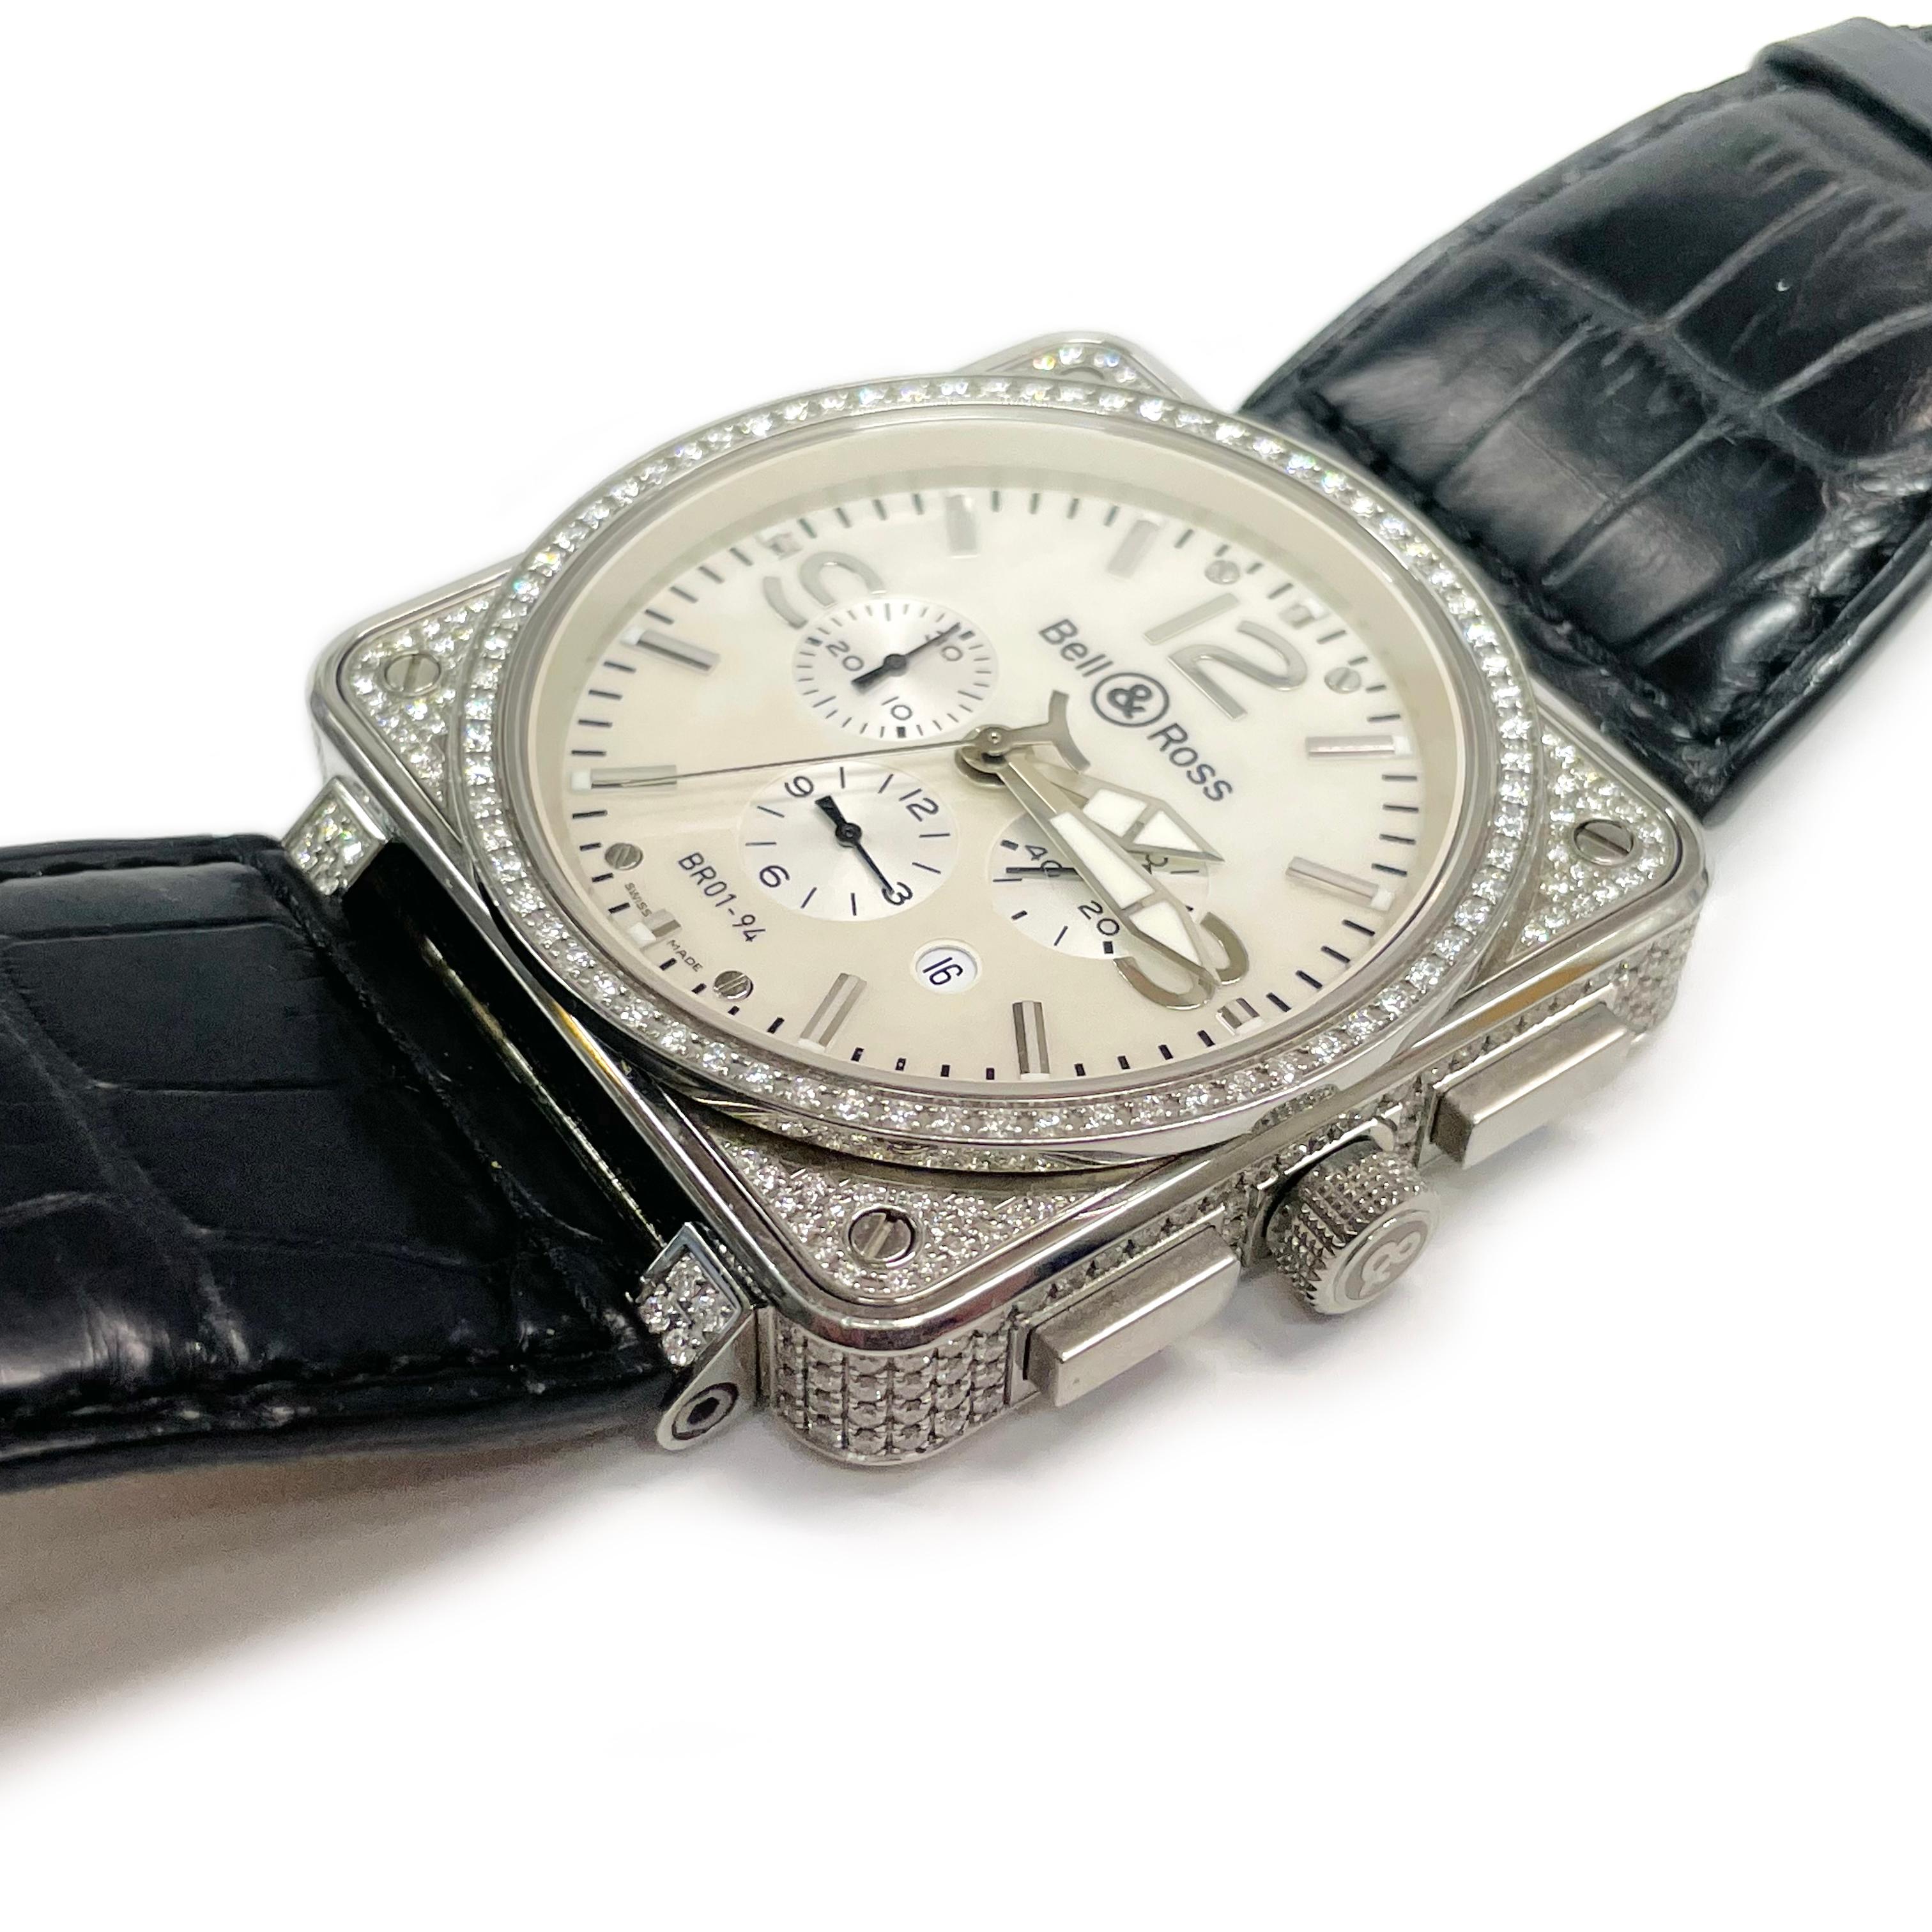 Bell & Ross Diamond Automatikwerk Armbanduhr. Die übergroße Uhr verfügt über ein Perlmuttzifferblatt, ein Gehäuse mit Diamantlünette sowie Stunden-, Minuten- und Sekundenzeiger. Auf der Rückseite des Gehäuses steht Chronograph Edelstahl